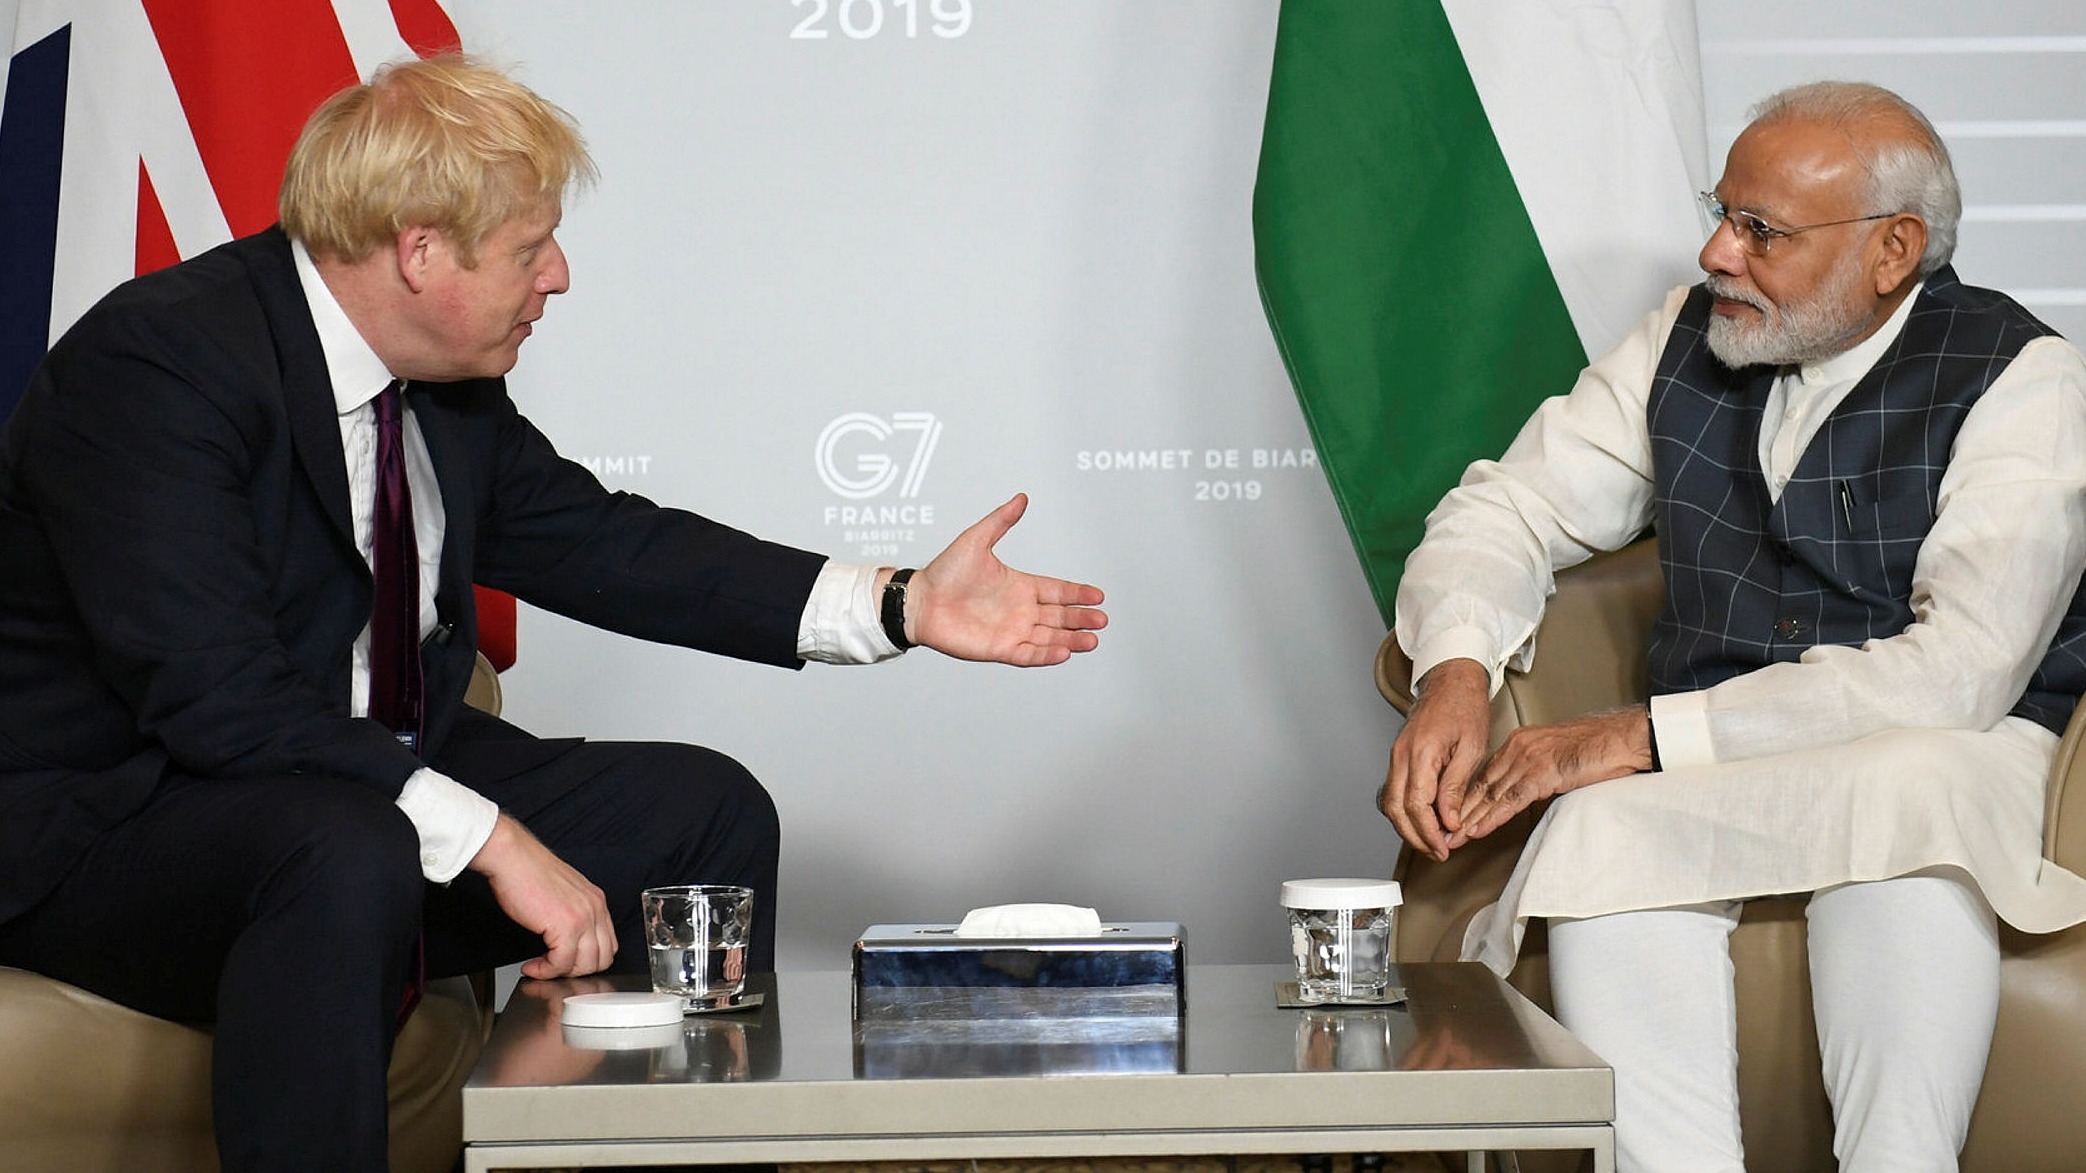 Modi accepts Britain's G7 summit invitation